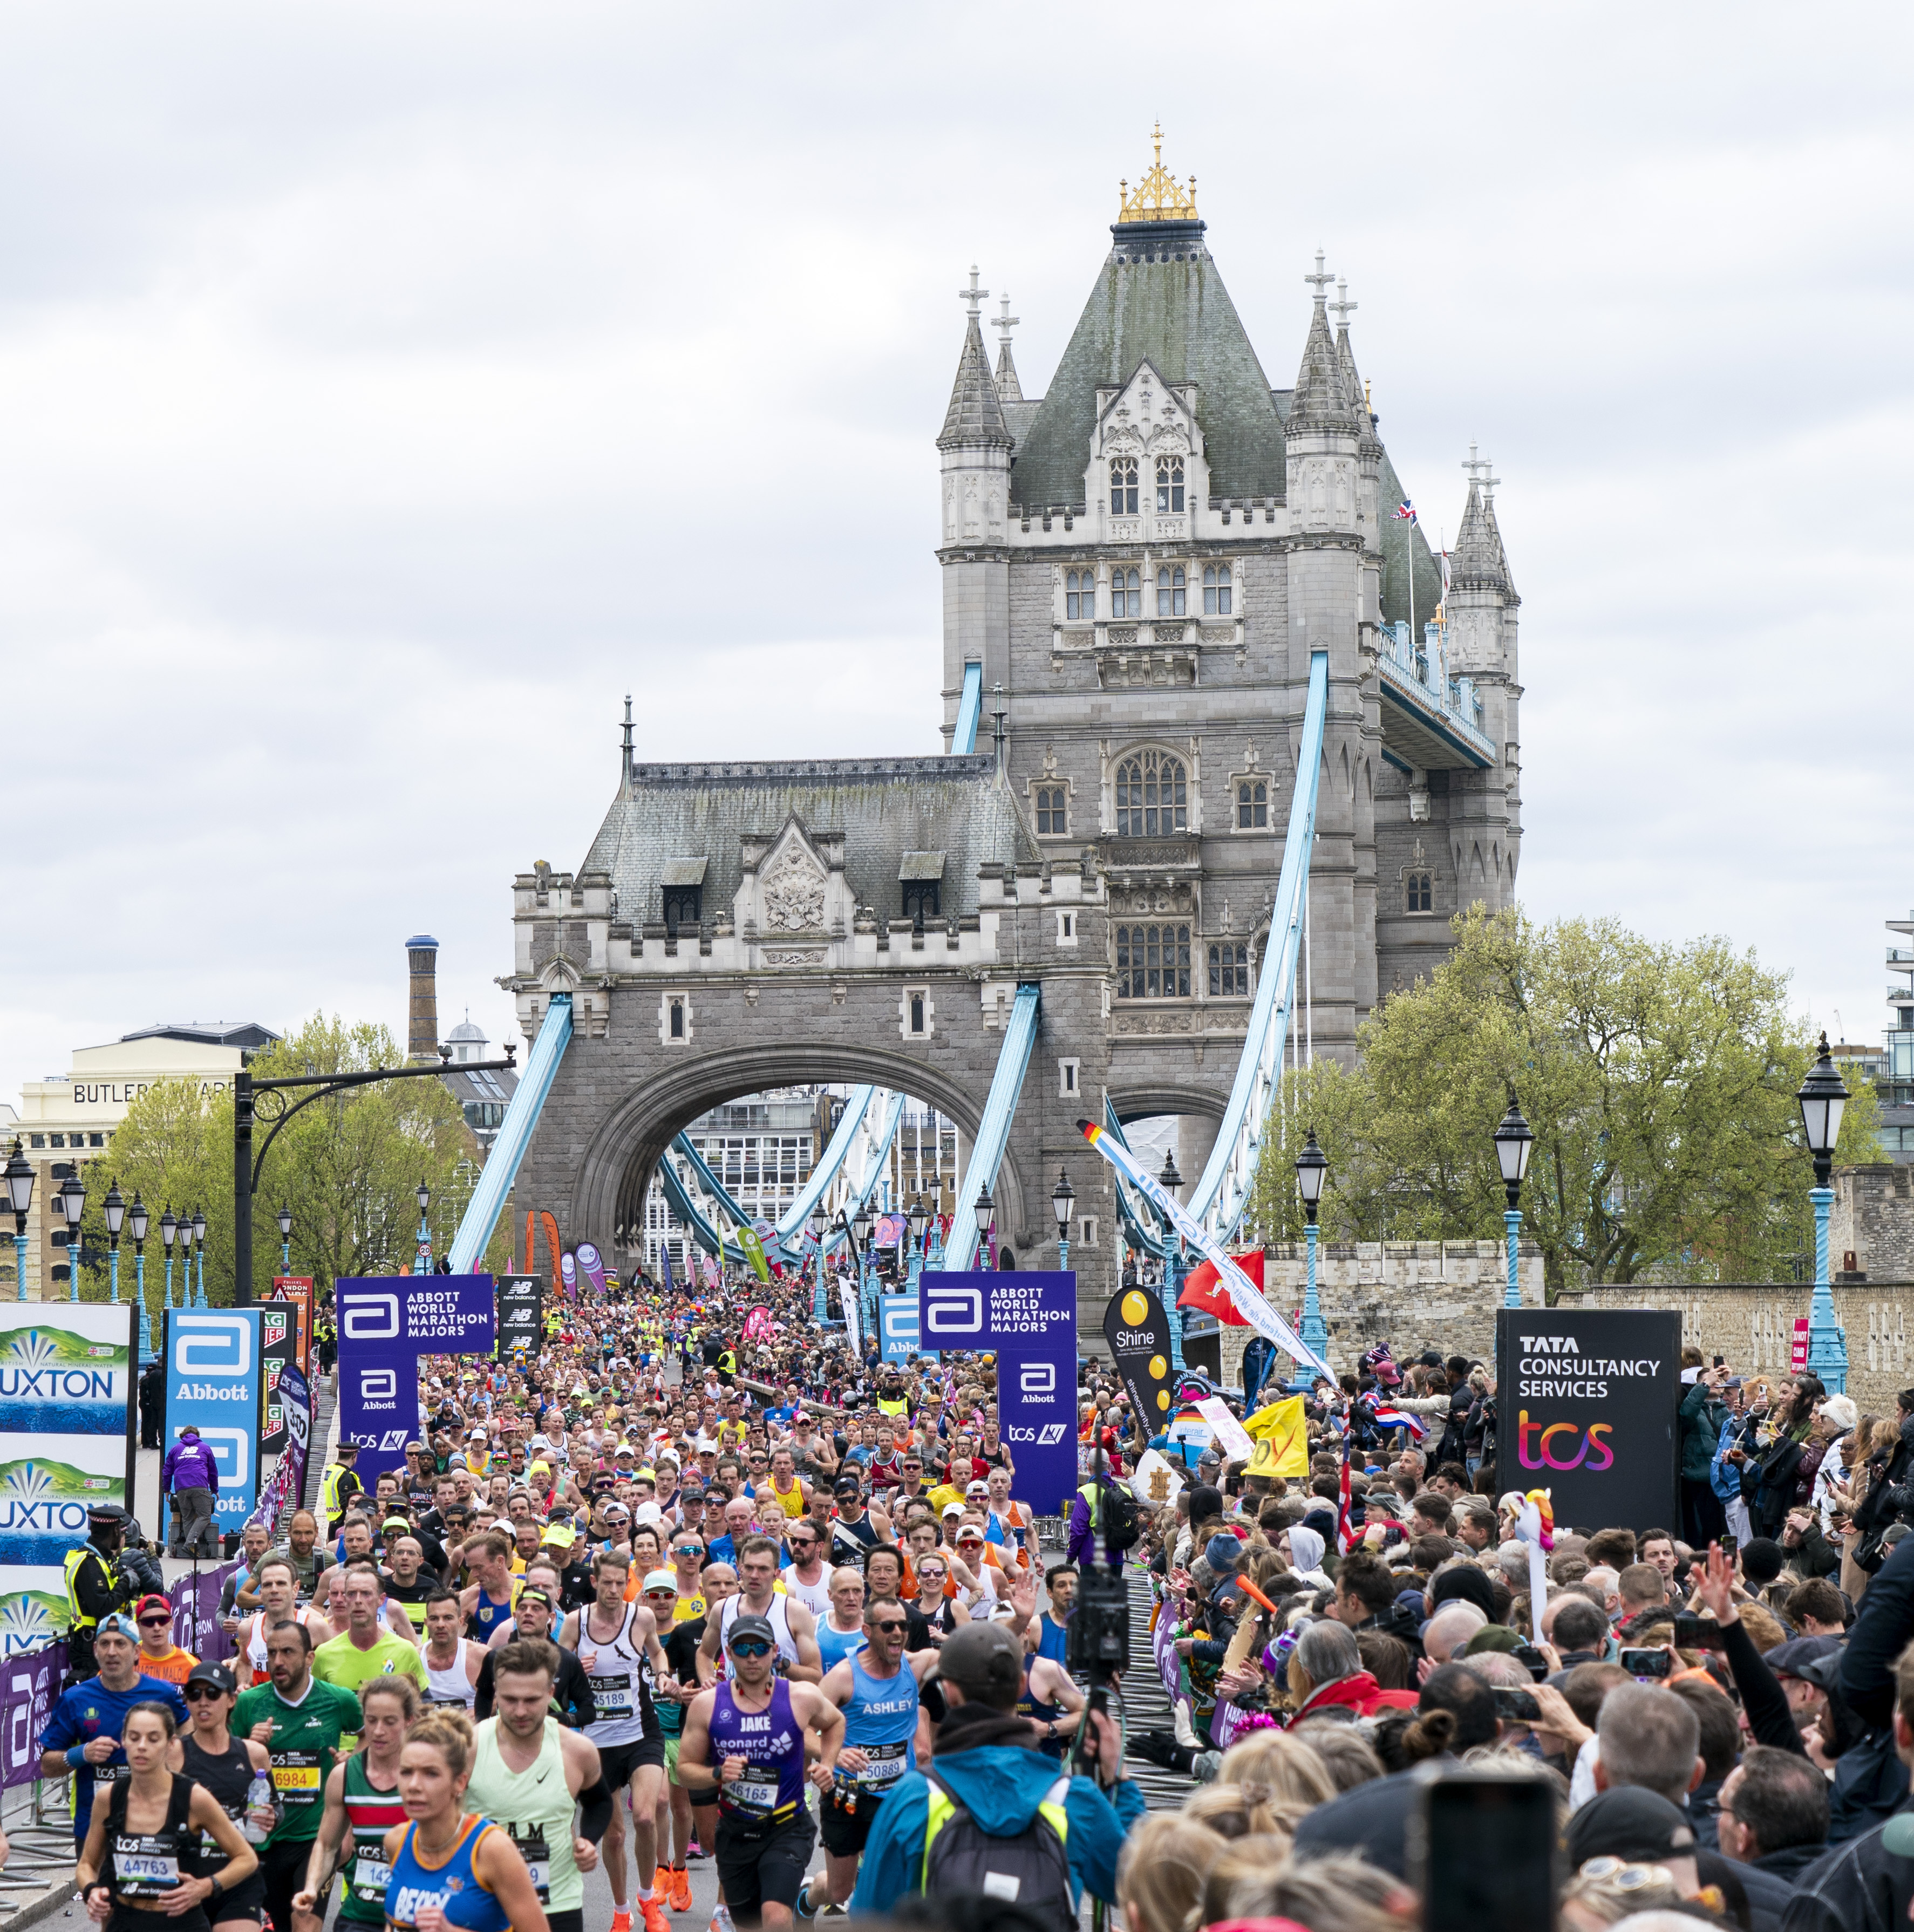 Der Chef einer Supermarktkette, der 2015 ein geschätztes Vermögen von 215 Millionen Pfund hatte, lief seinen ersten London-Marathon überhaupt